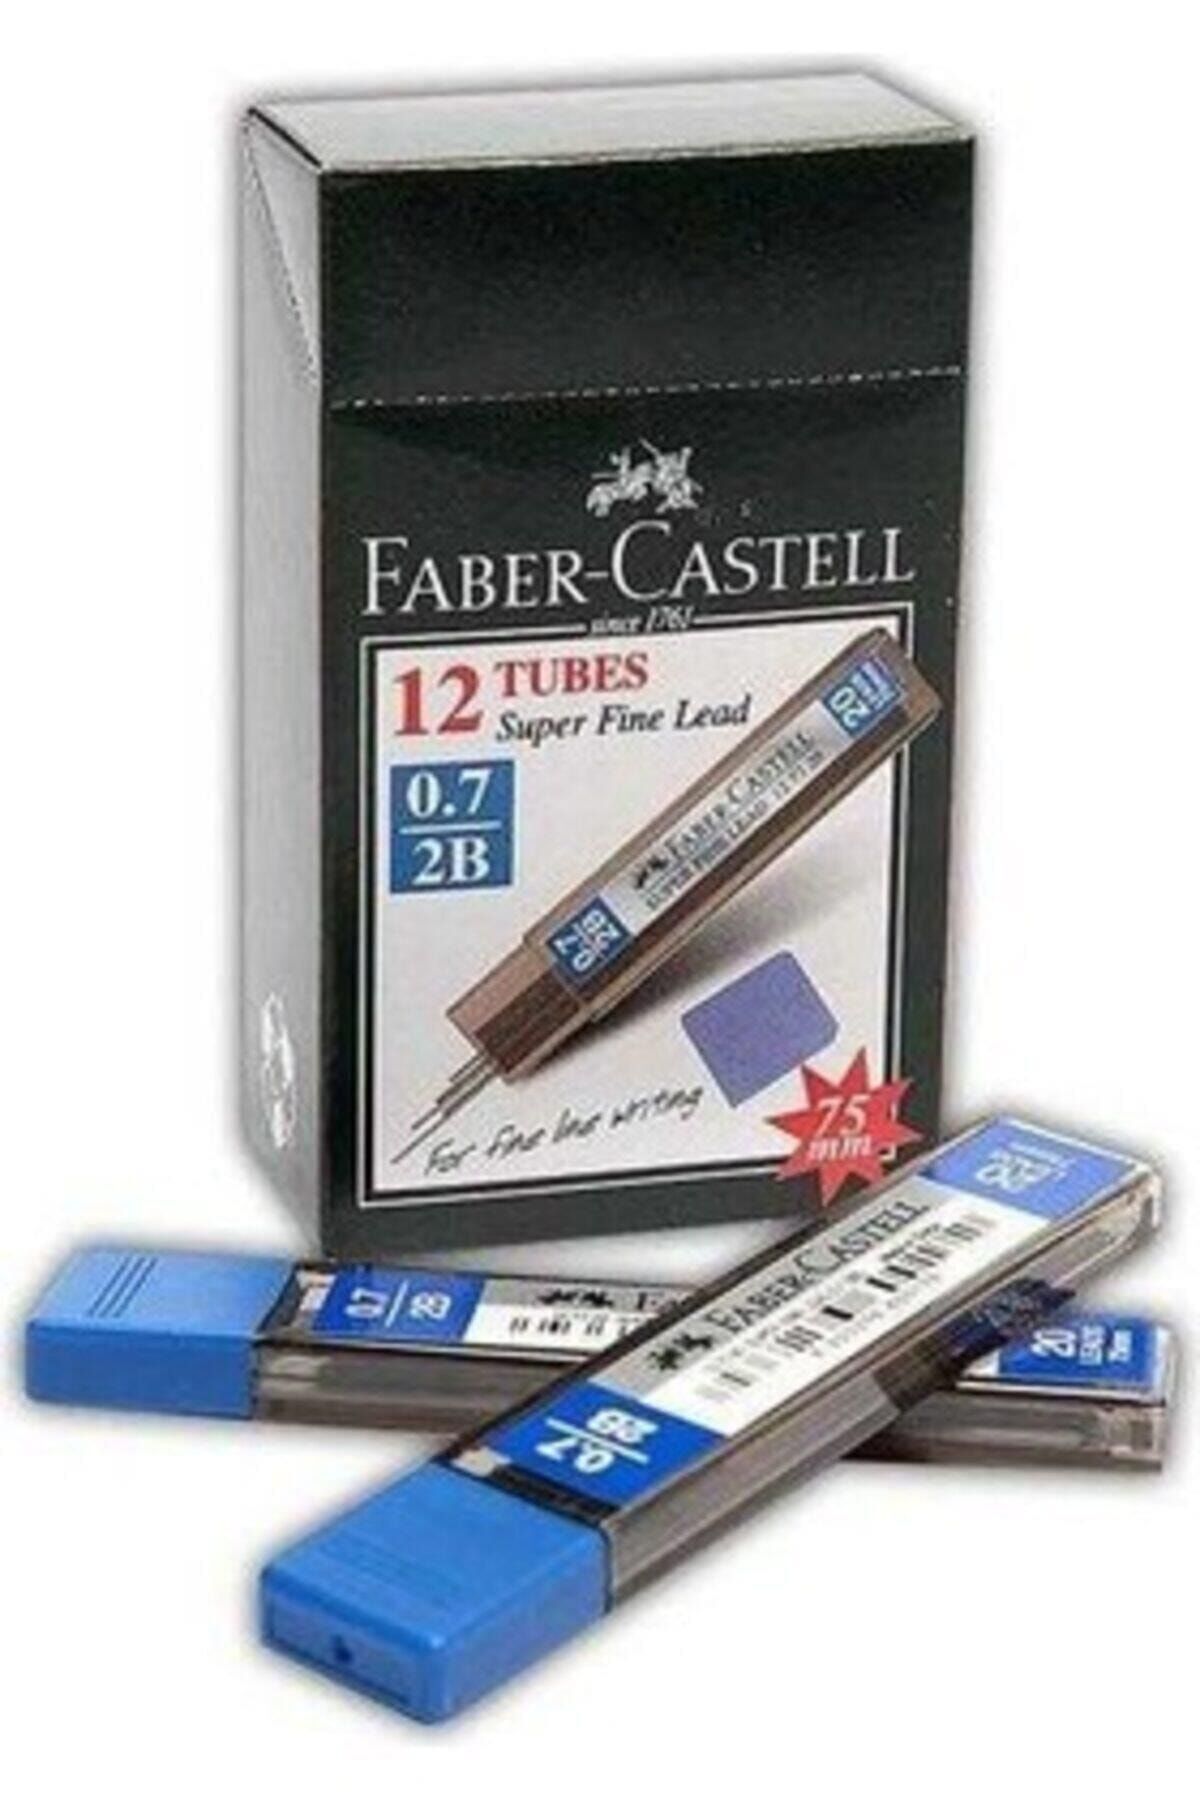 Faber Castell Min Süper Fine Lead 2b 75 Mm 0.7 Mm Versatil Kalem Ucu (1 Paket 12 Tüp) YA.6933256600189